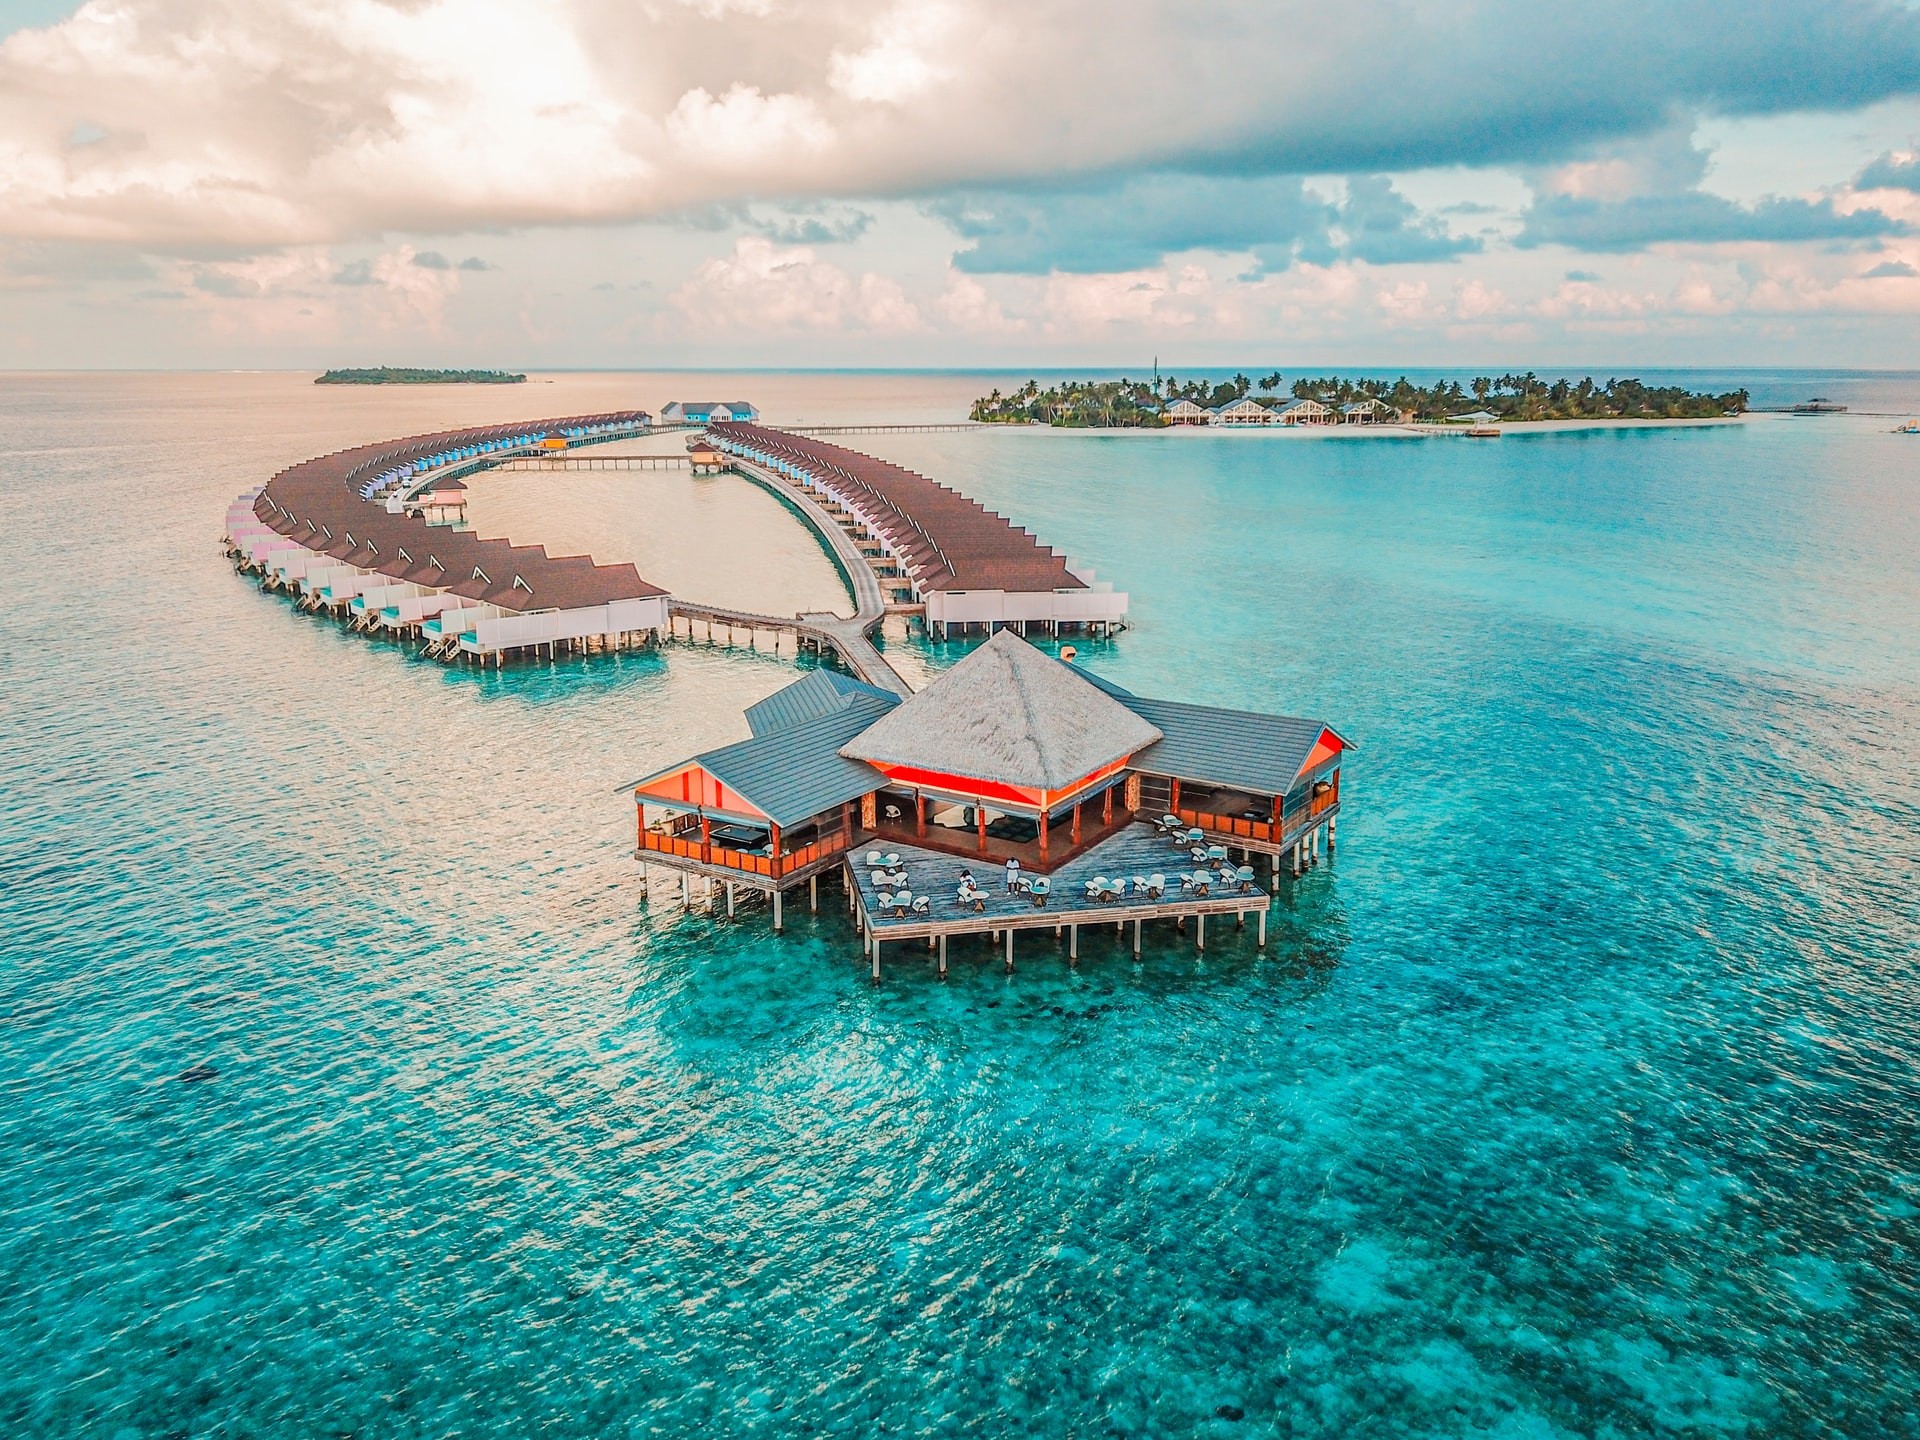 أهم جزر المالديف من حيث المساحة